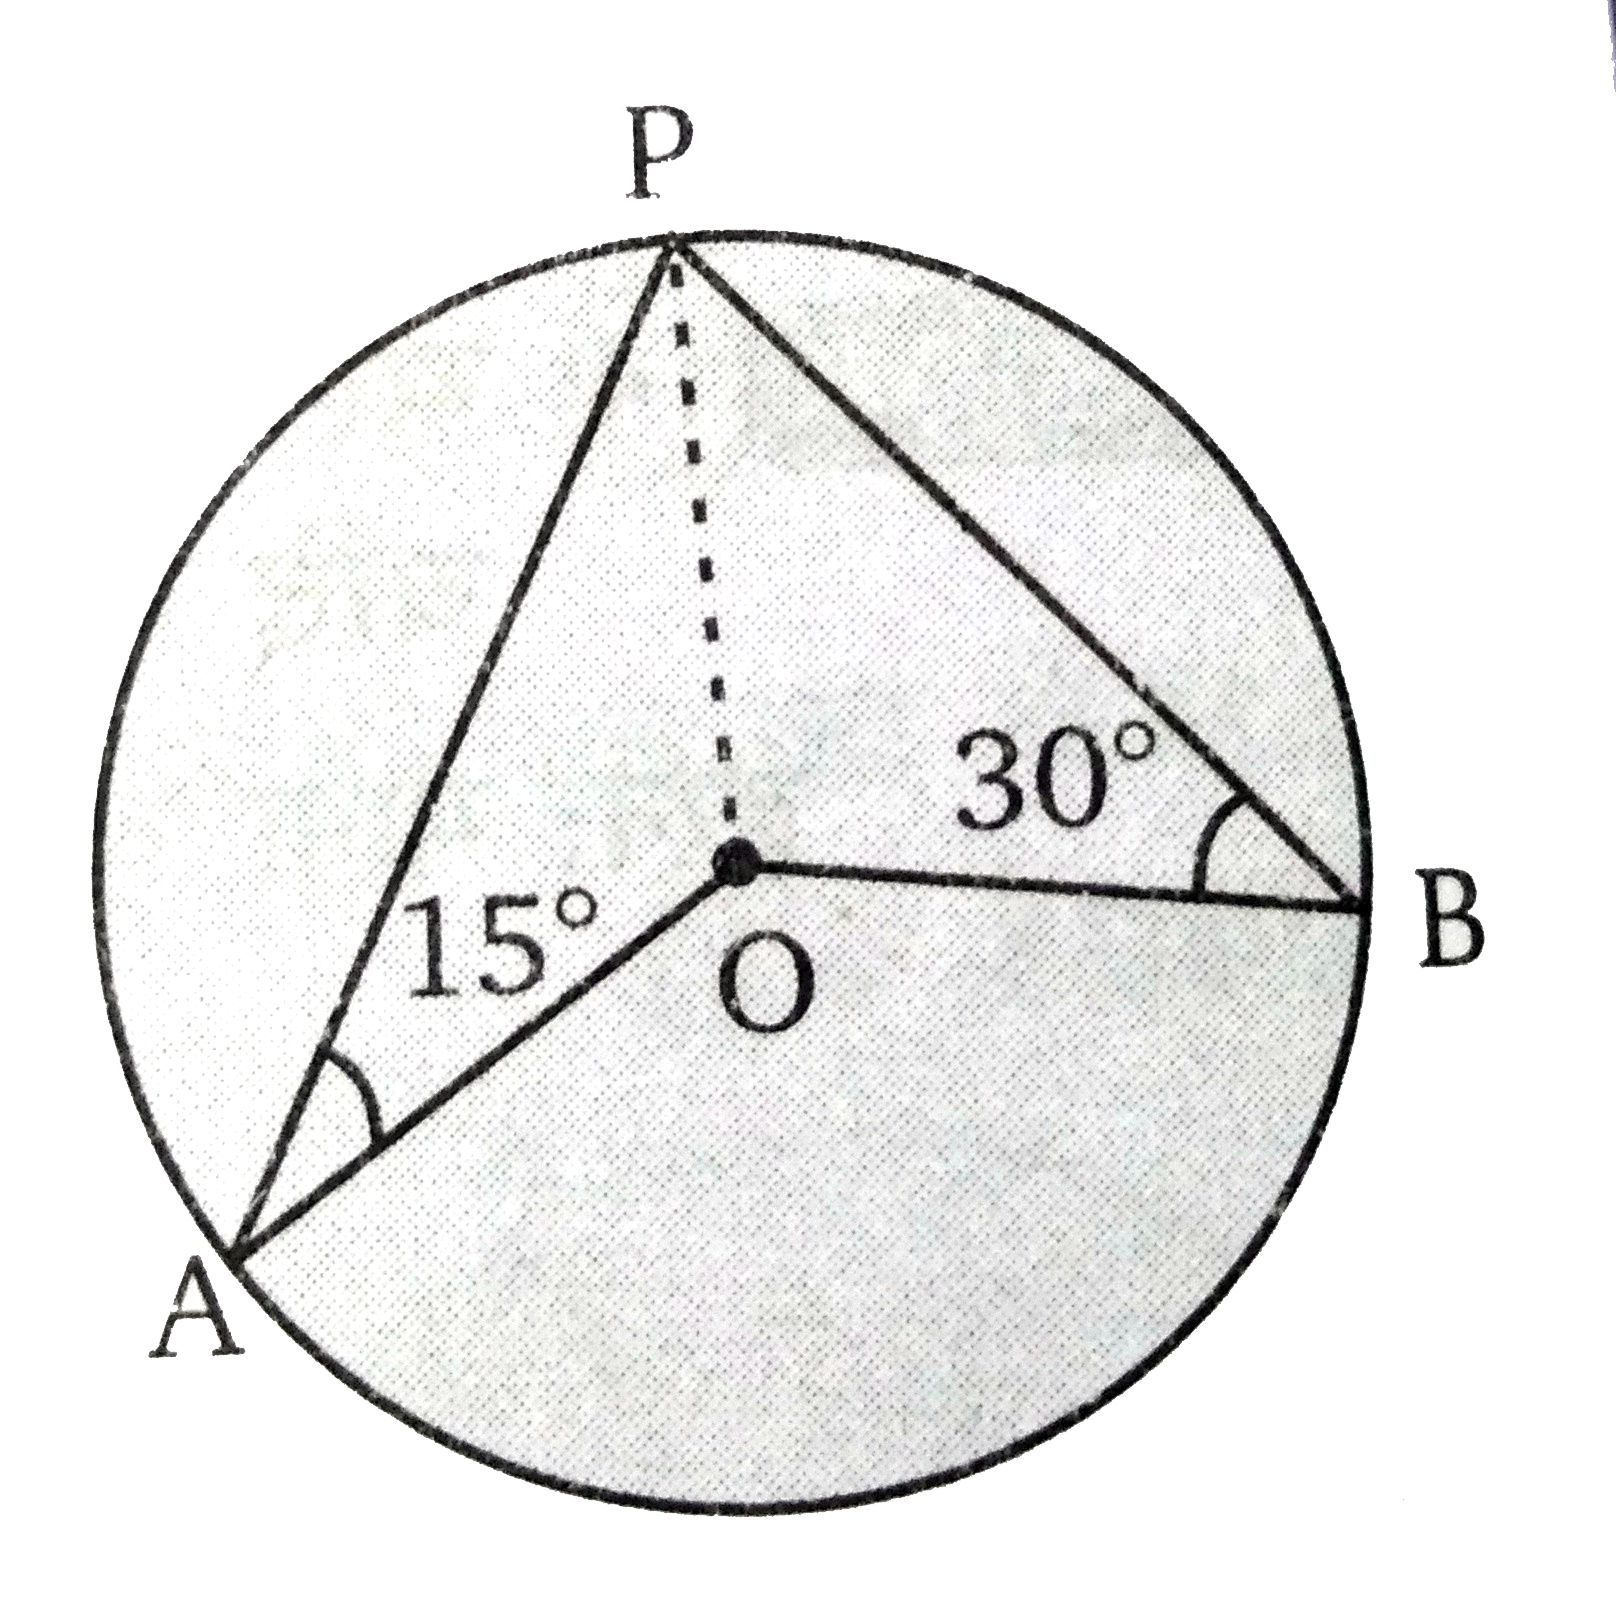 चित्र में, O वृत्त का केन्द्र है। angle PAO =15 ^(@) तथा angle PBO =30 ^(@) तब angle AOB  का मान ज्ञात कीजिए।